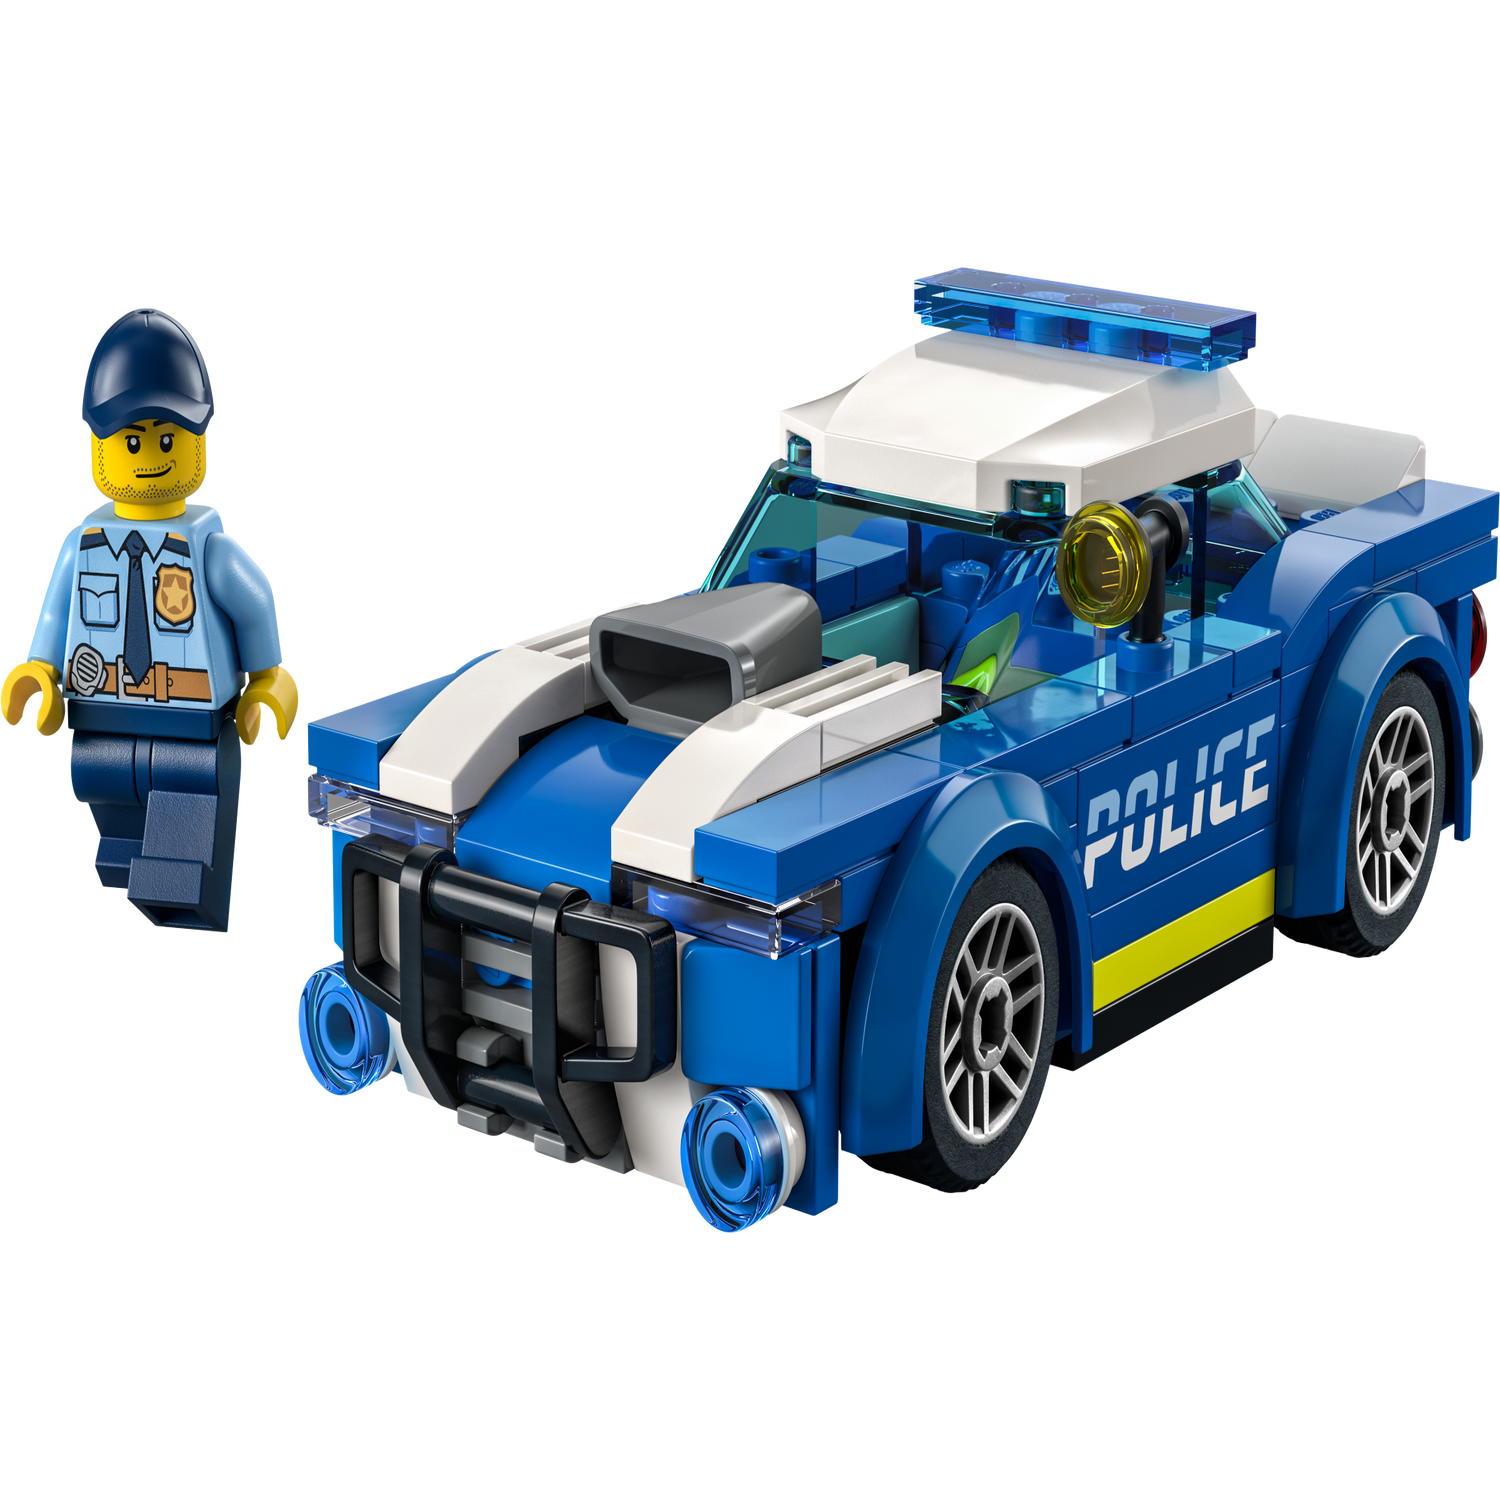 Police Car 60312, City